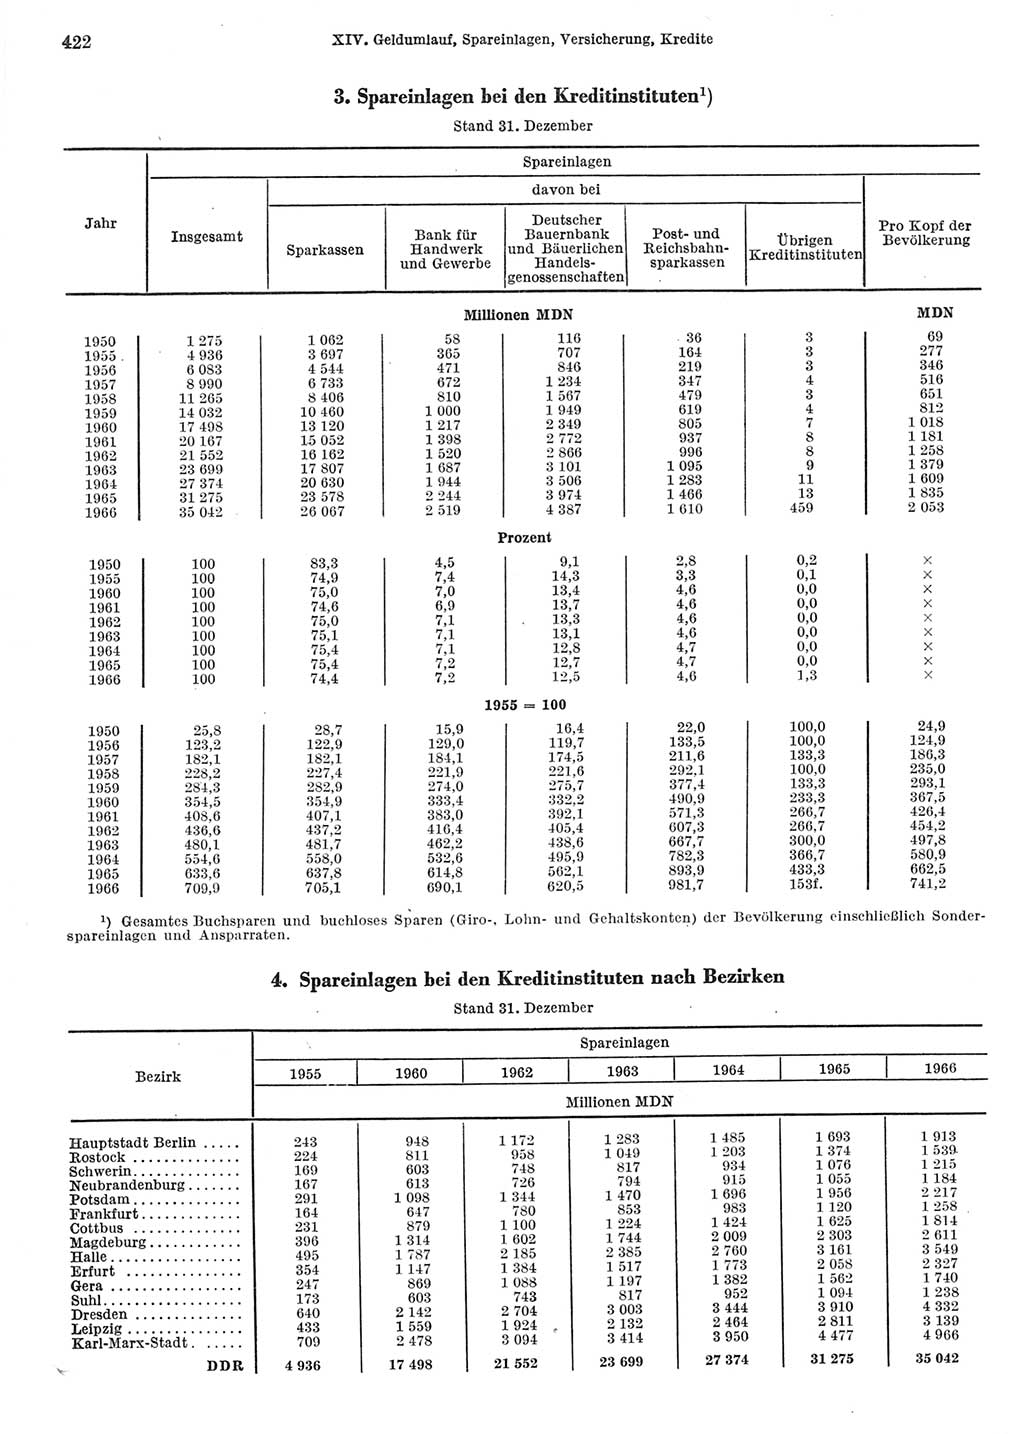 Statistisches Jahrbuch der Deutschen Demokratischen Republik (DDR) 1967, Seite 422 (Stat. Jb. DDR 1967, S. 422)